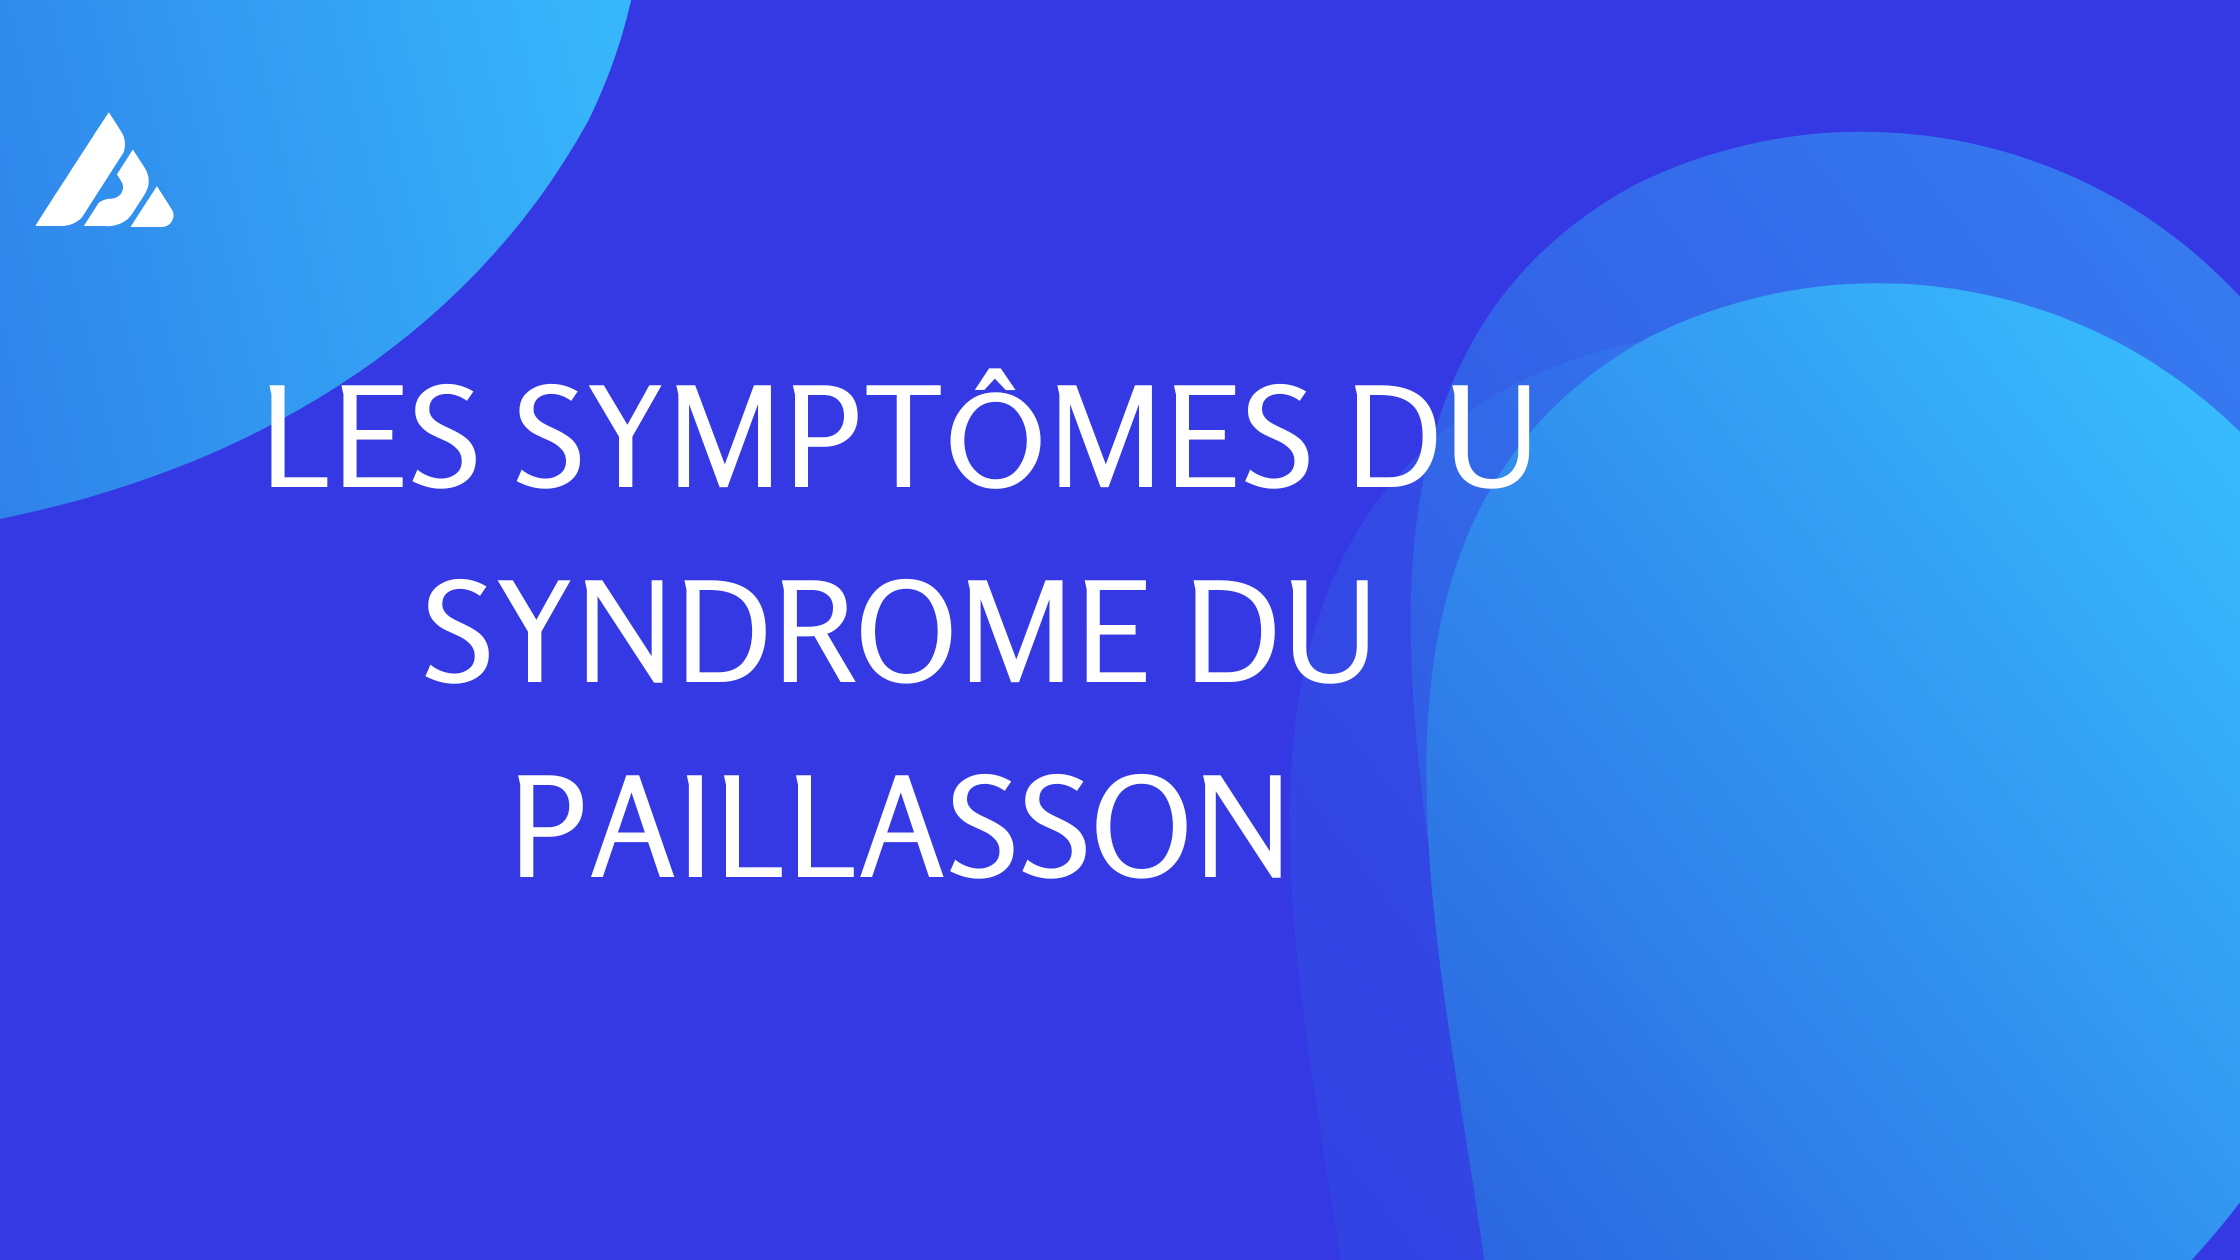 syndrome du paillasson | 4 Points Important